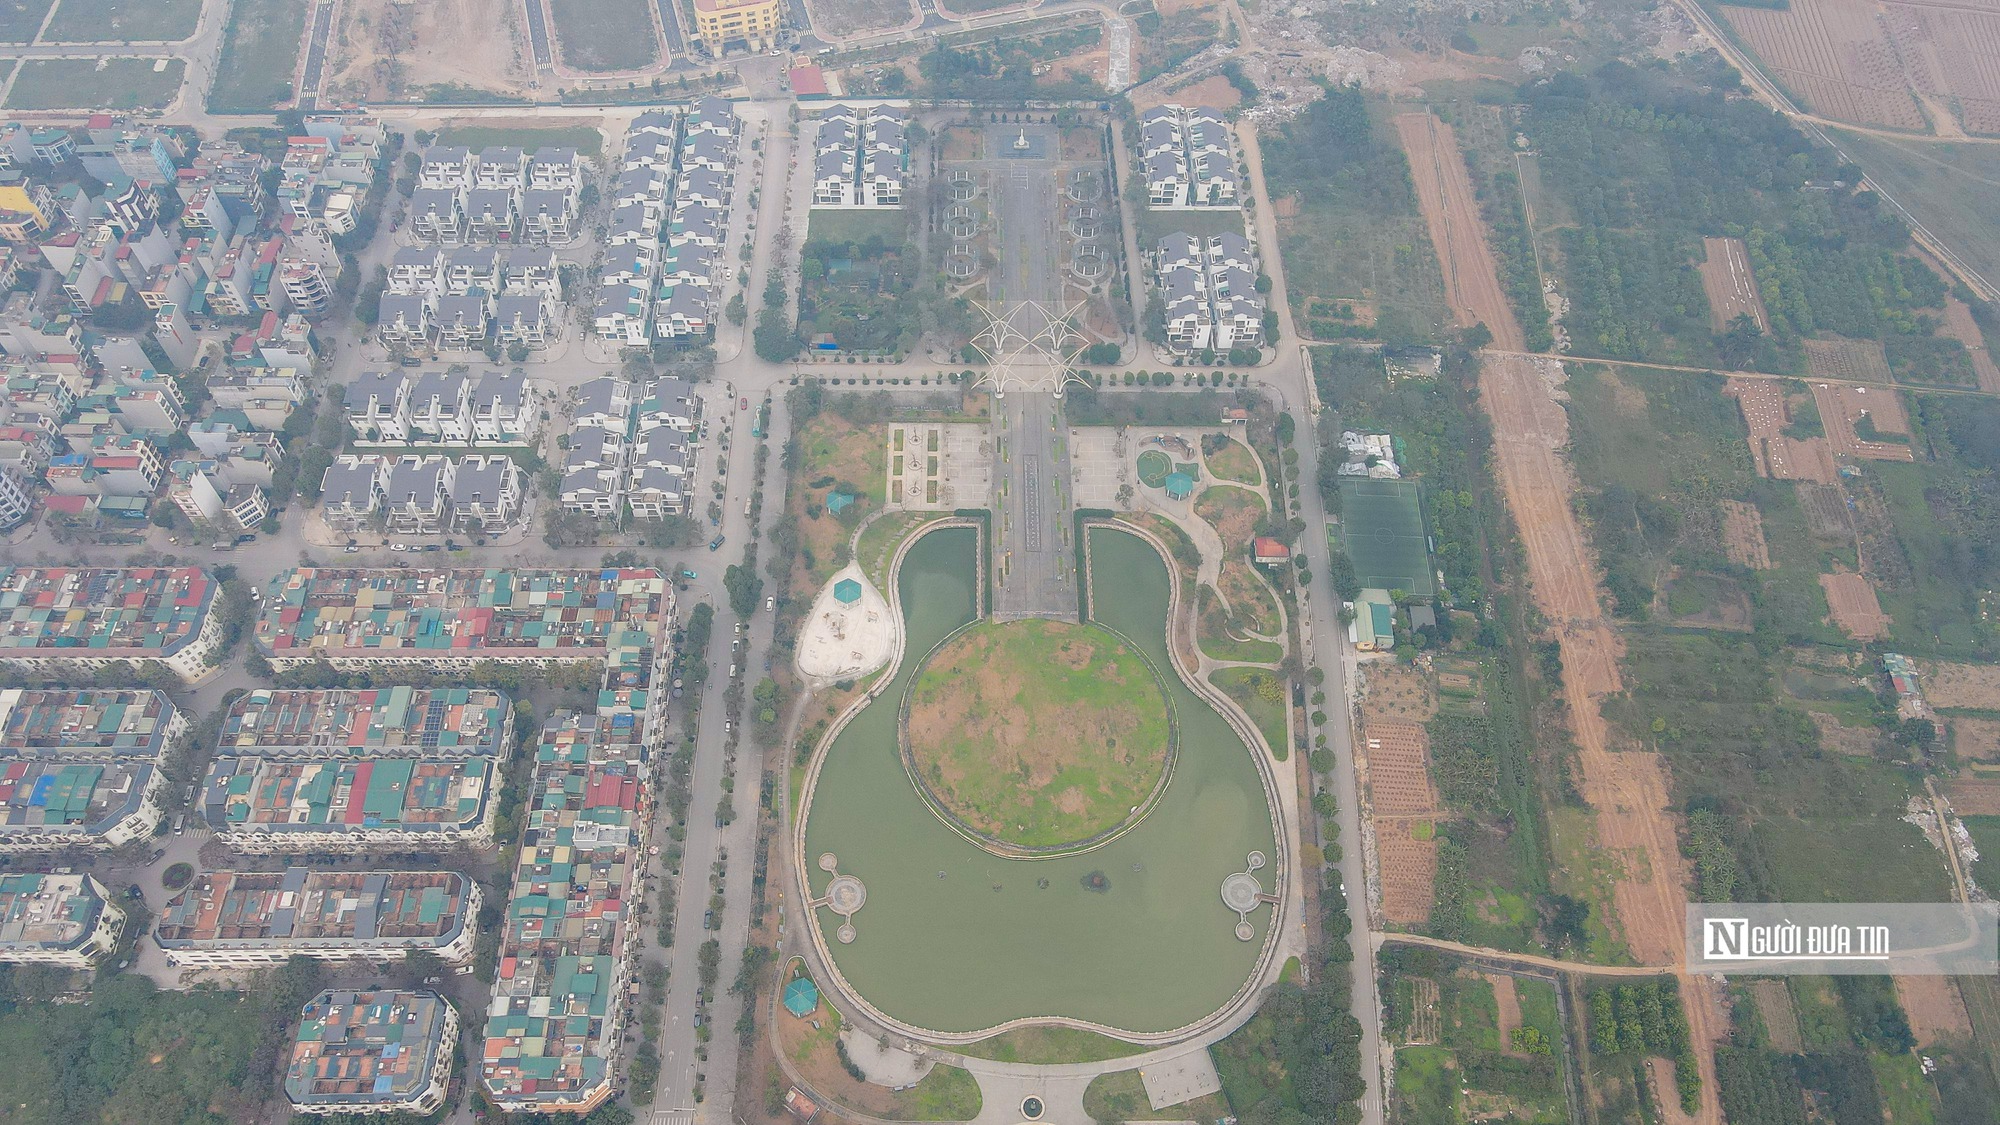 Hà Nội: Cận cảnh công viên hình cây đàn guitar trị giá 200 tỷ đồng- Ảnh 1.